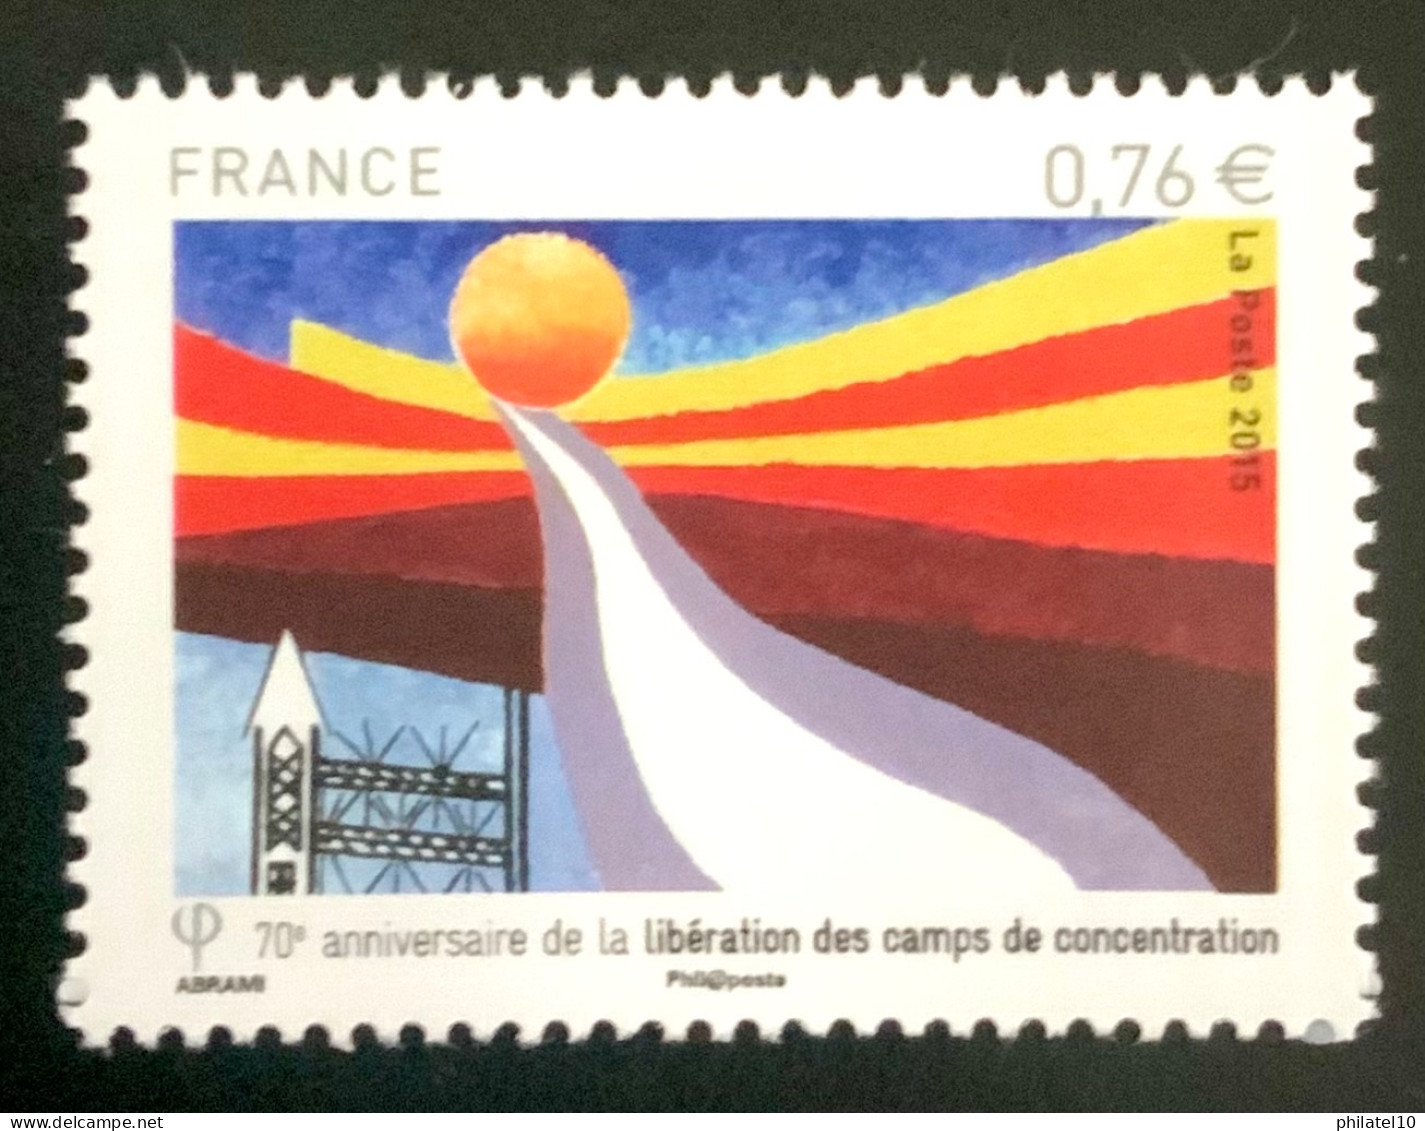 2015 FRANCE N 4948 70e ANNIVERSAIRE DE LA LIBÉRATION DES CAMPS DE CONCENTRATION - NEUF** - Unused Stamps